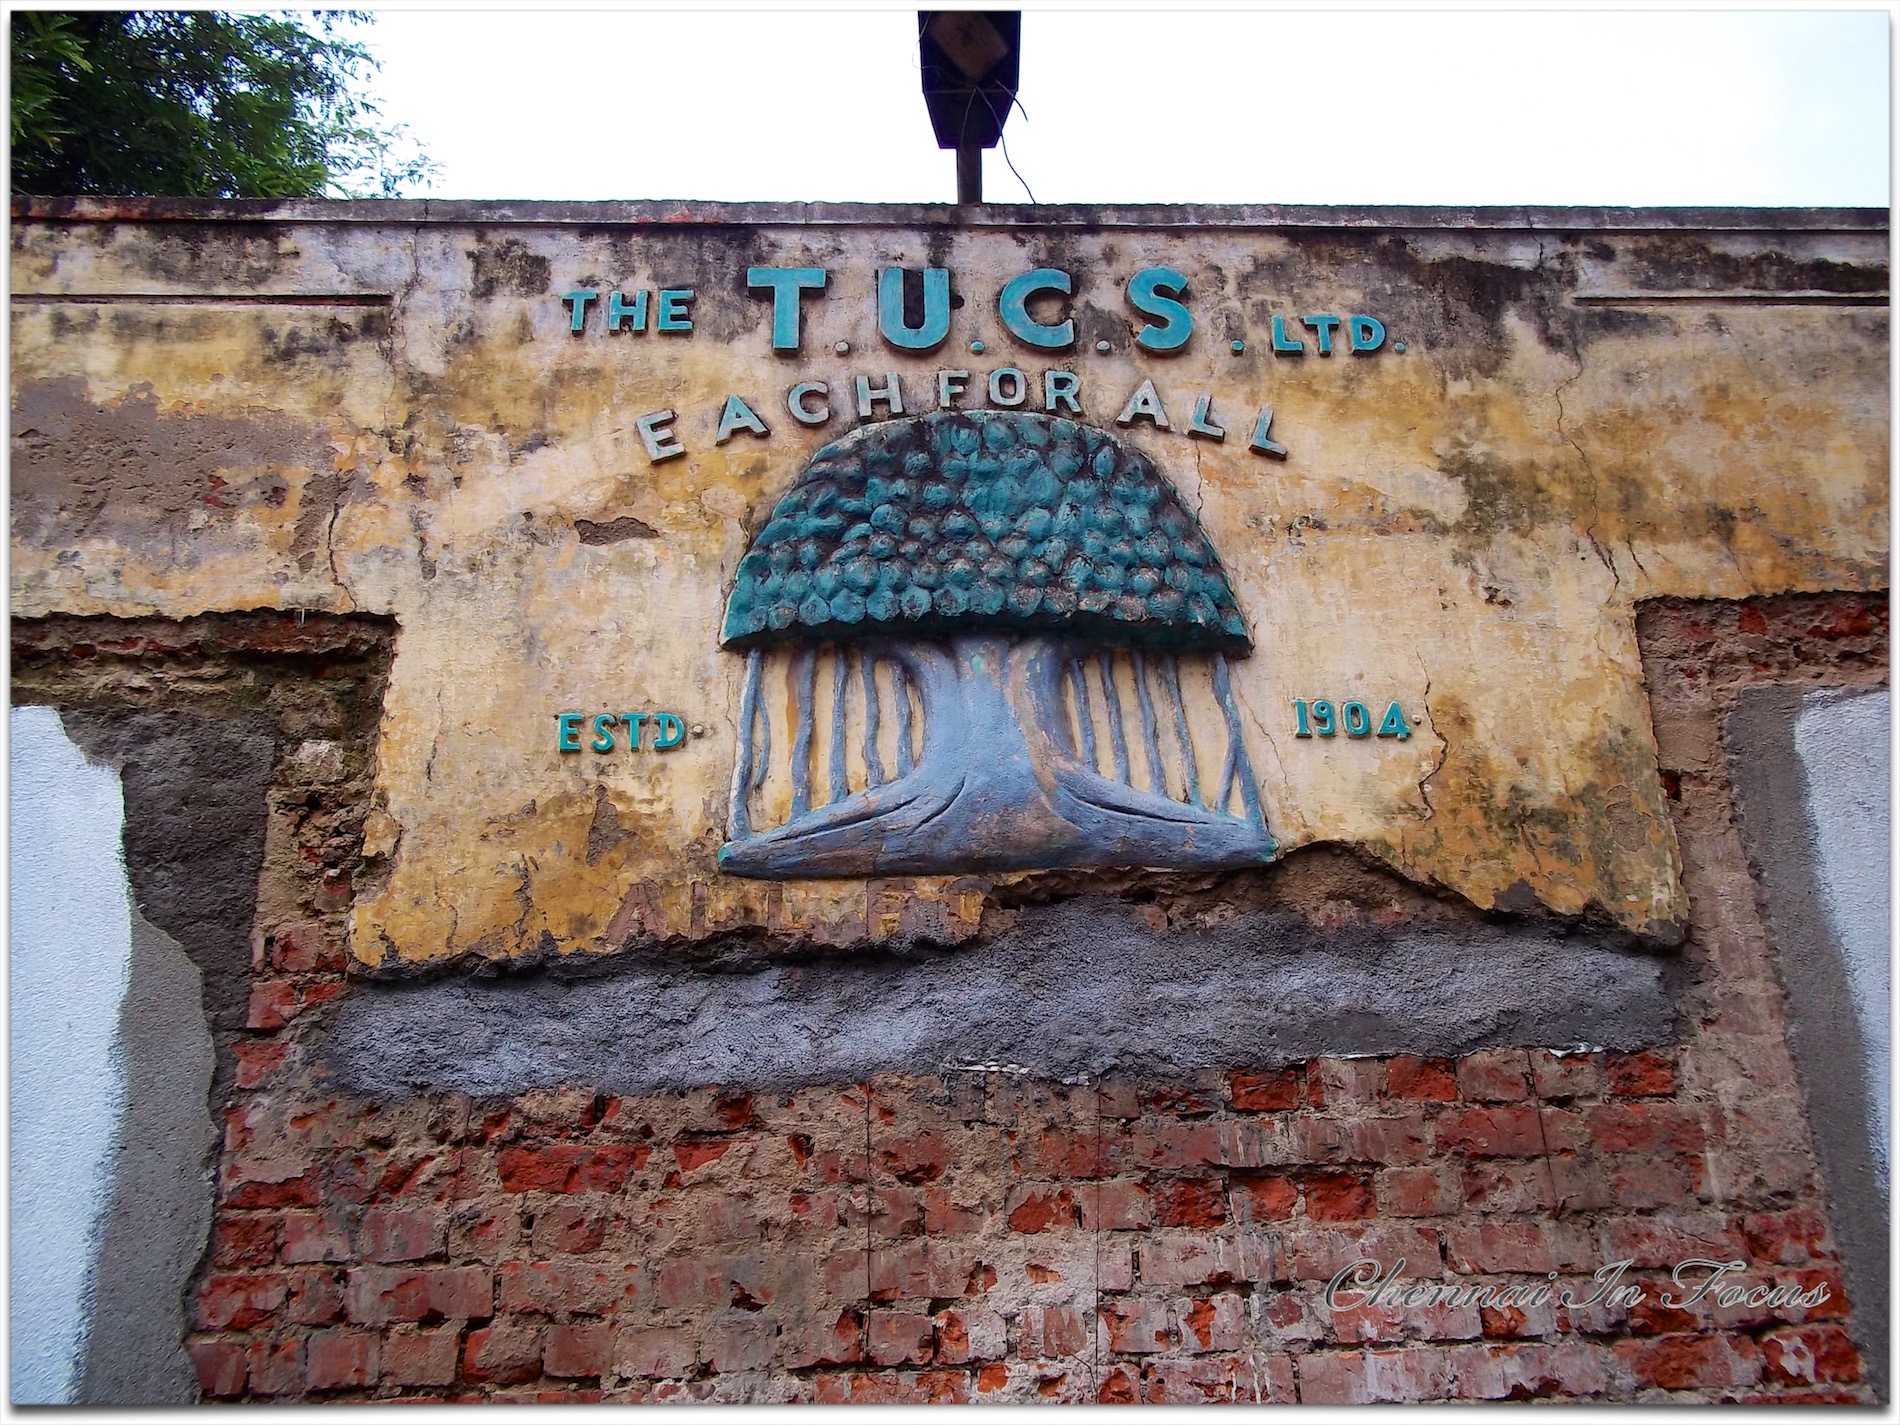 Tamilnadu Urban Cooperative Society Ltd (Tucs) / The TUCS Ltd.